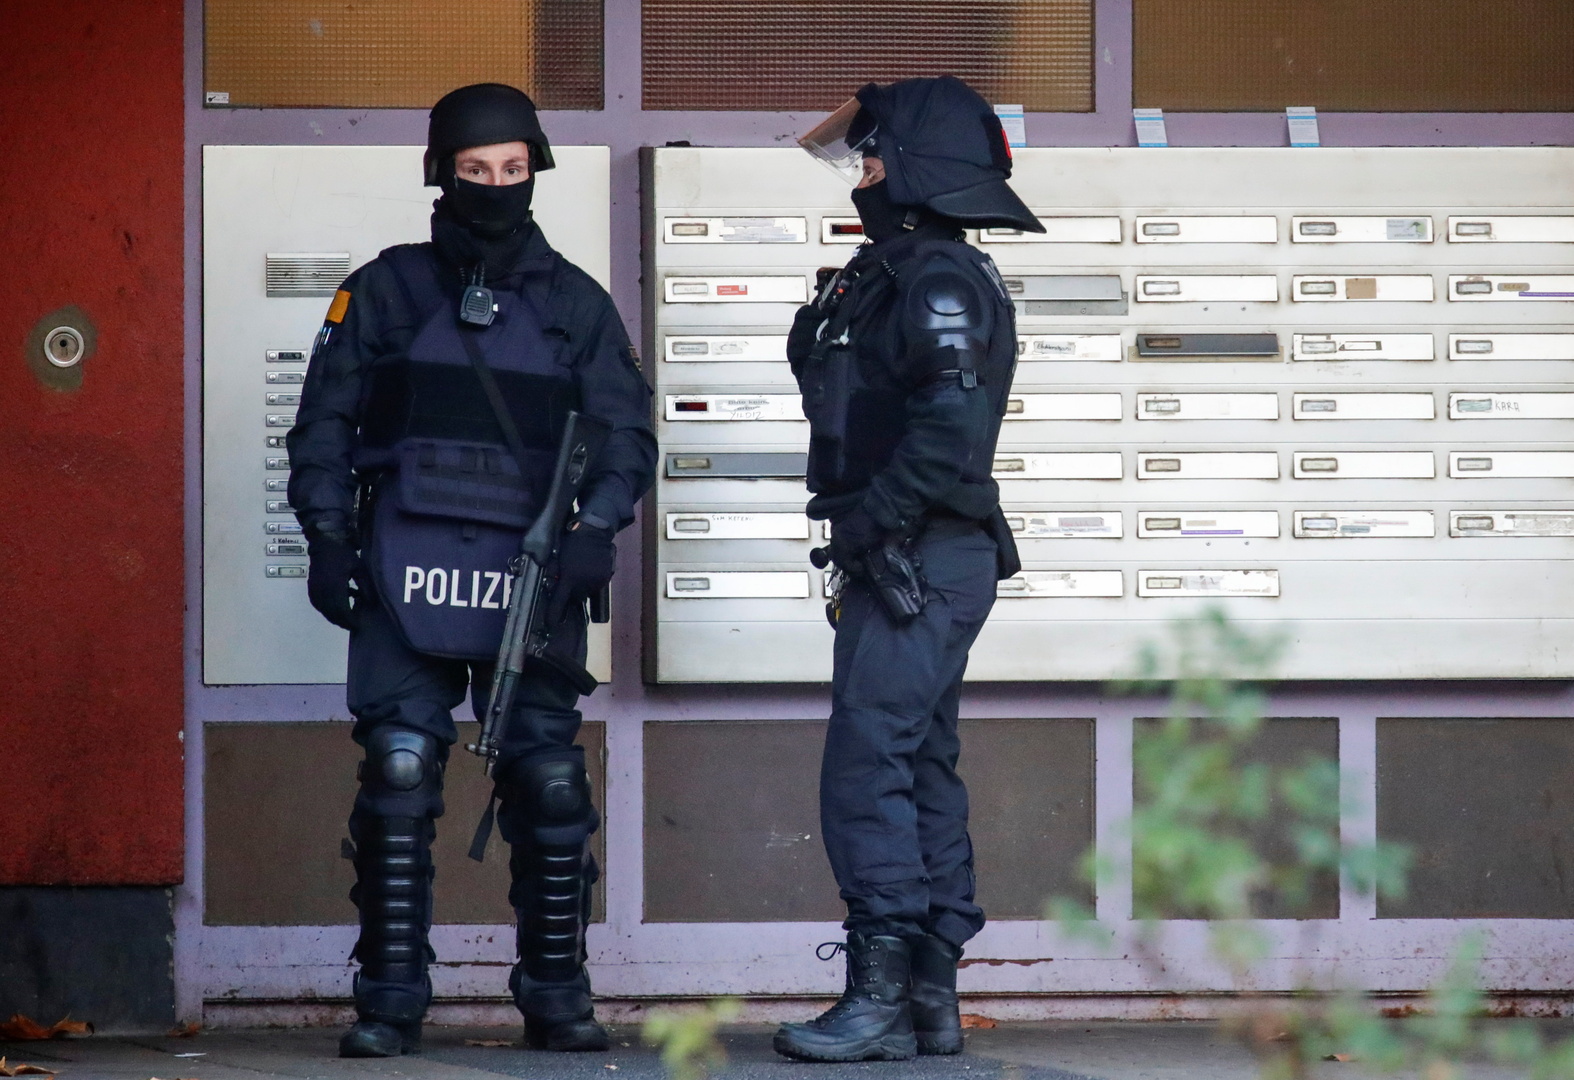 الشرطة الألمانية تفكك أوسع موقع تسوق إلكتروني في العالم لبيع المخدرات والعملات المزورة